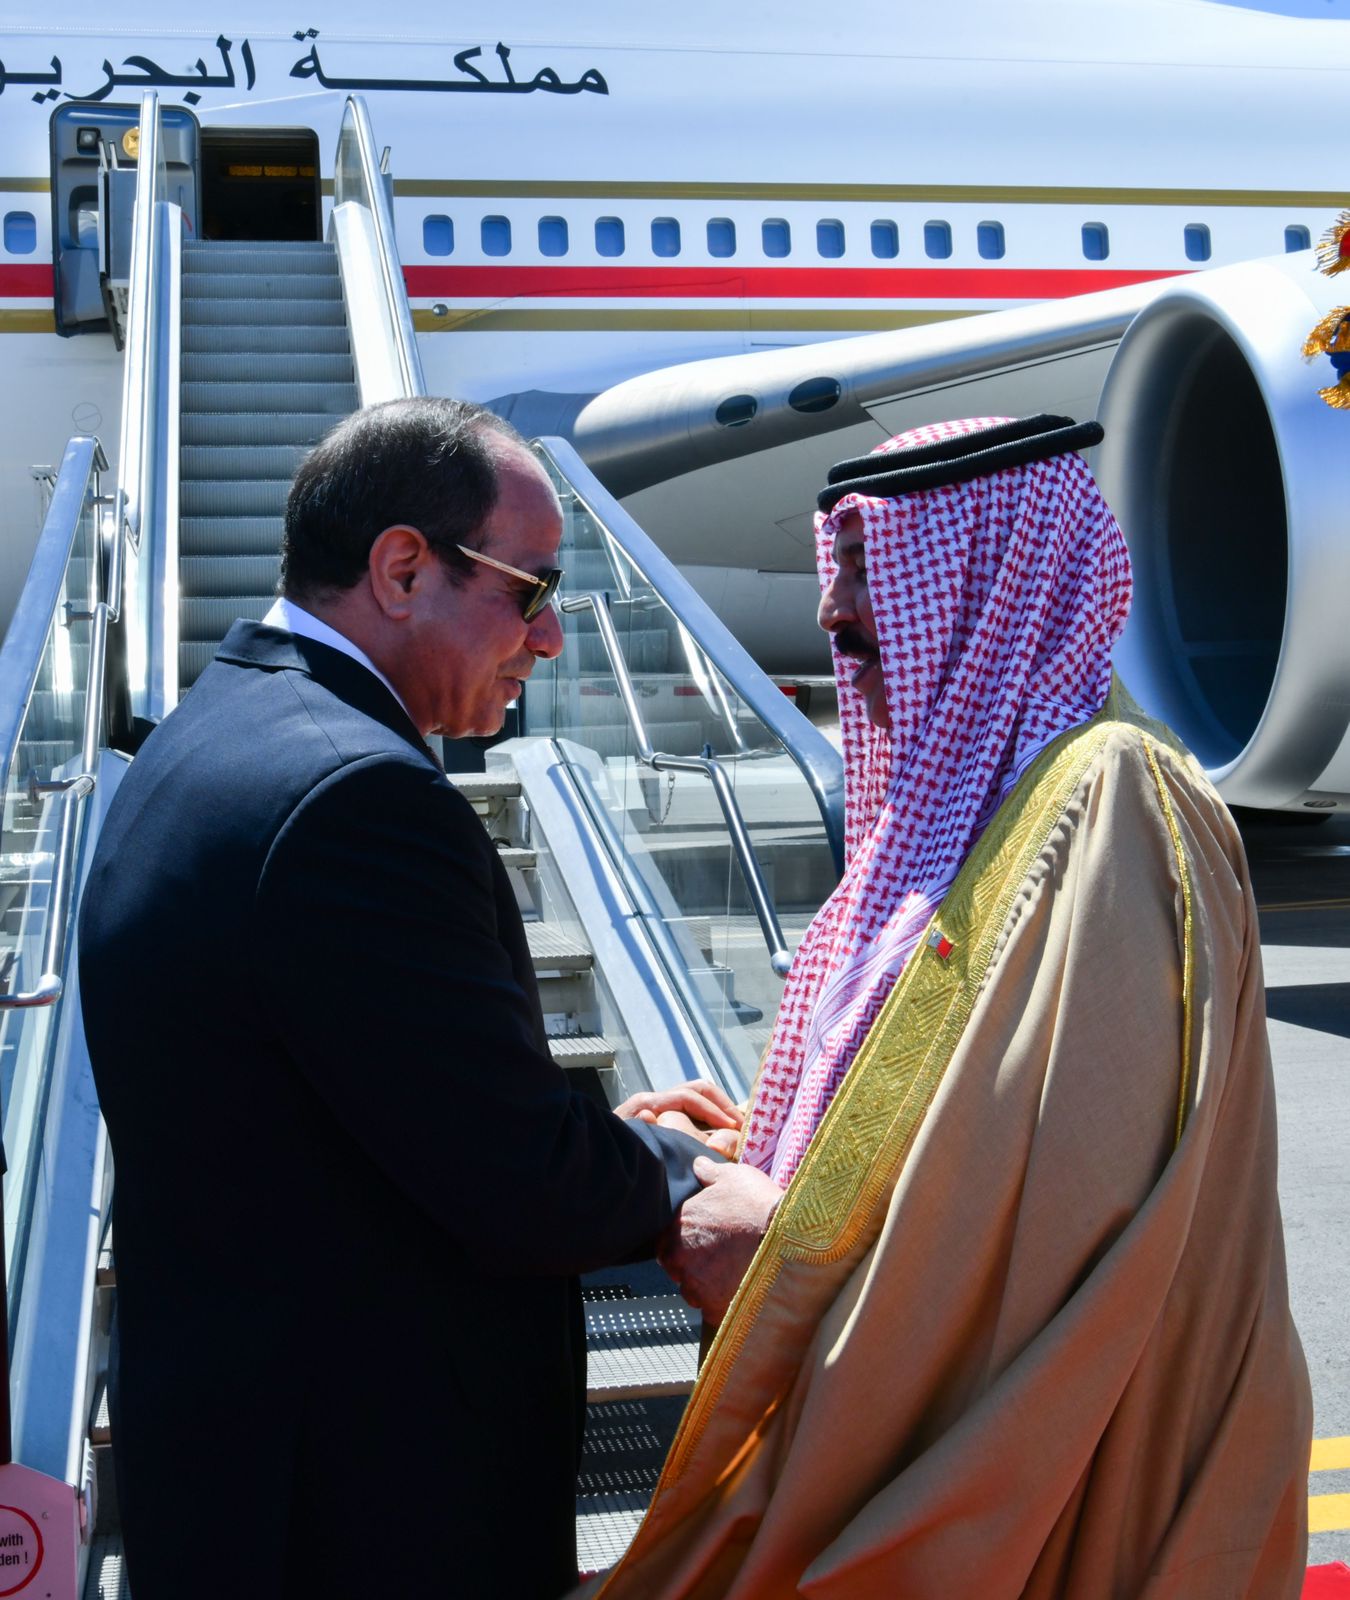 الرئيس يودع ملك البحرين بمطار العلمين